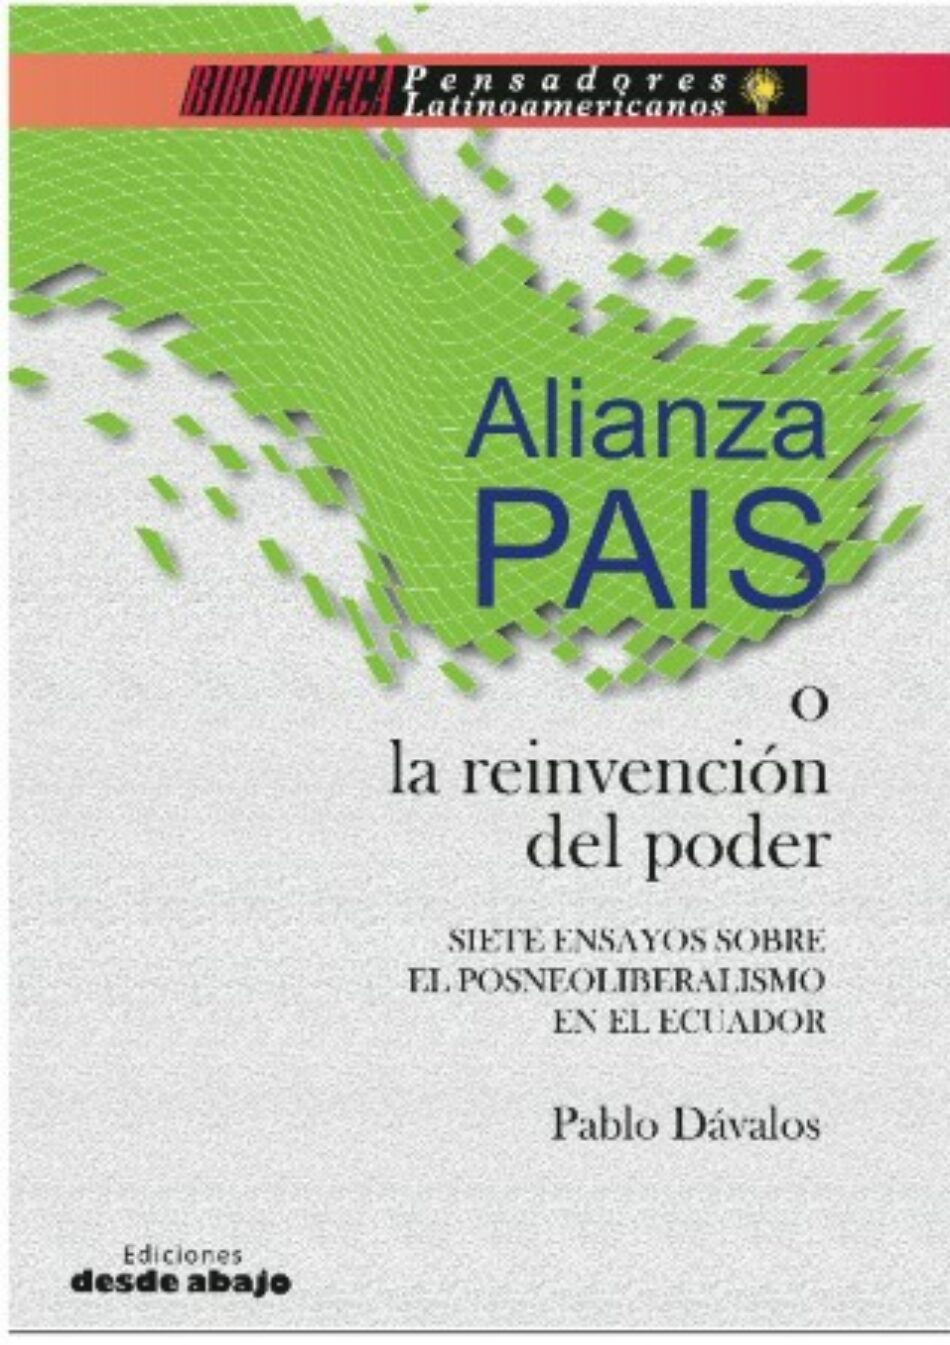 Alianza PAIS o la reinvención del poder